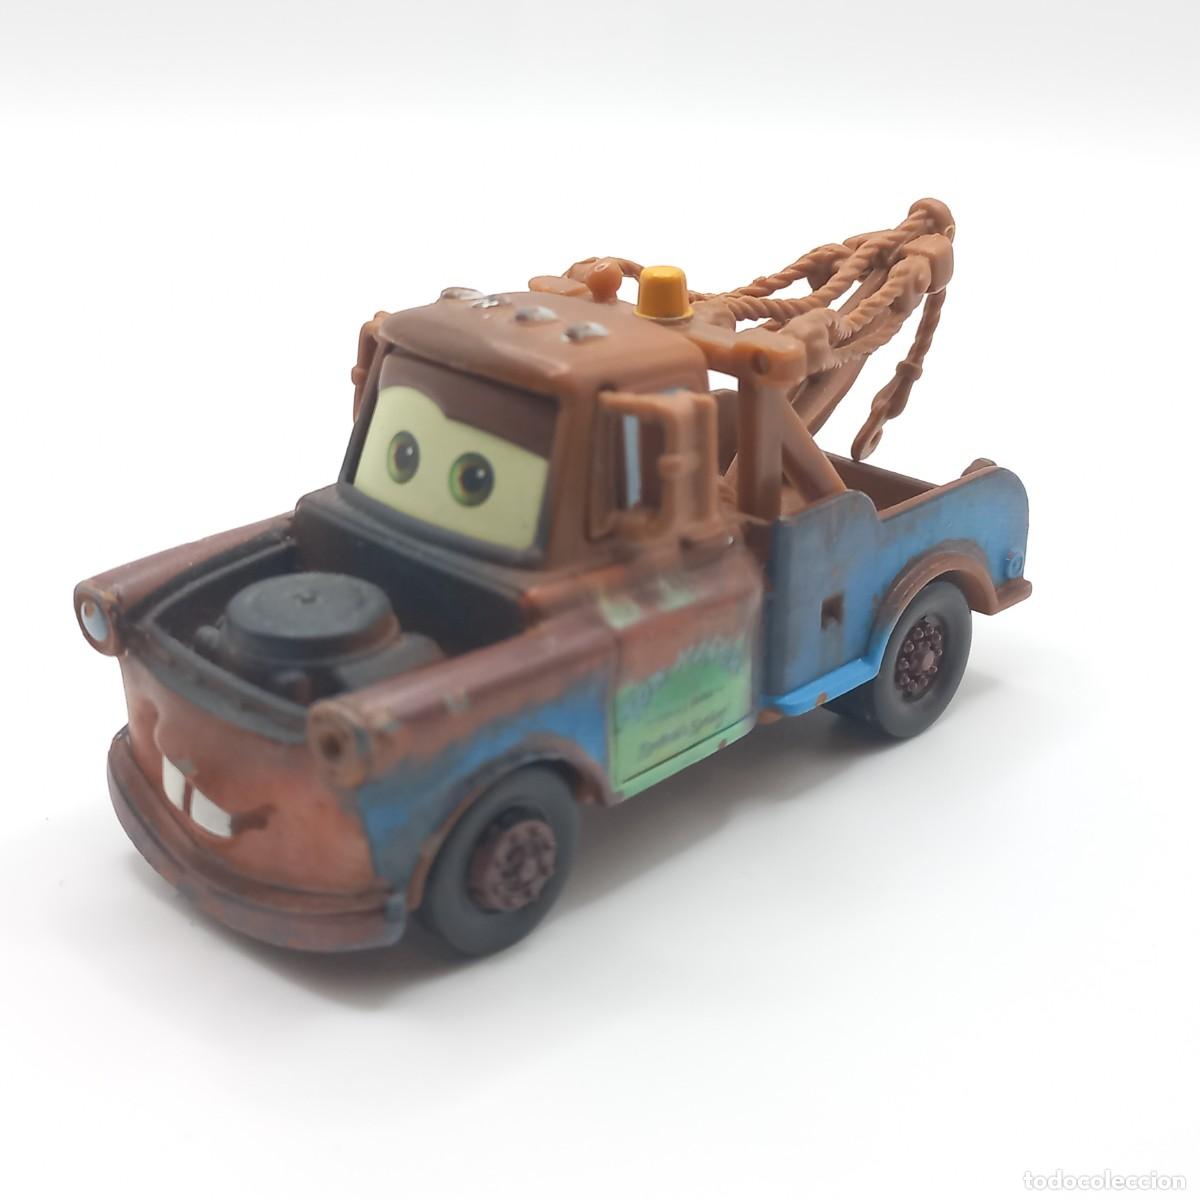 coche rayo mcqueen de disney mattel pixar - Compra venta en todocoleccion